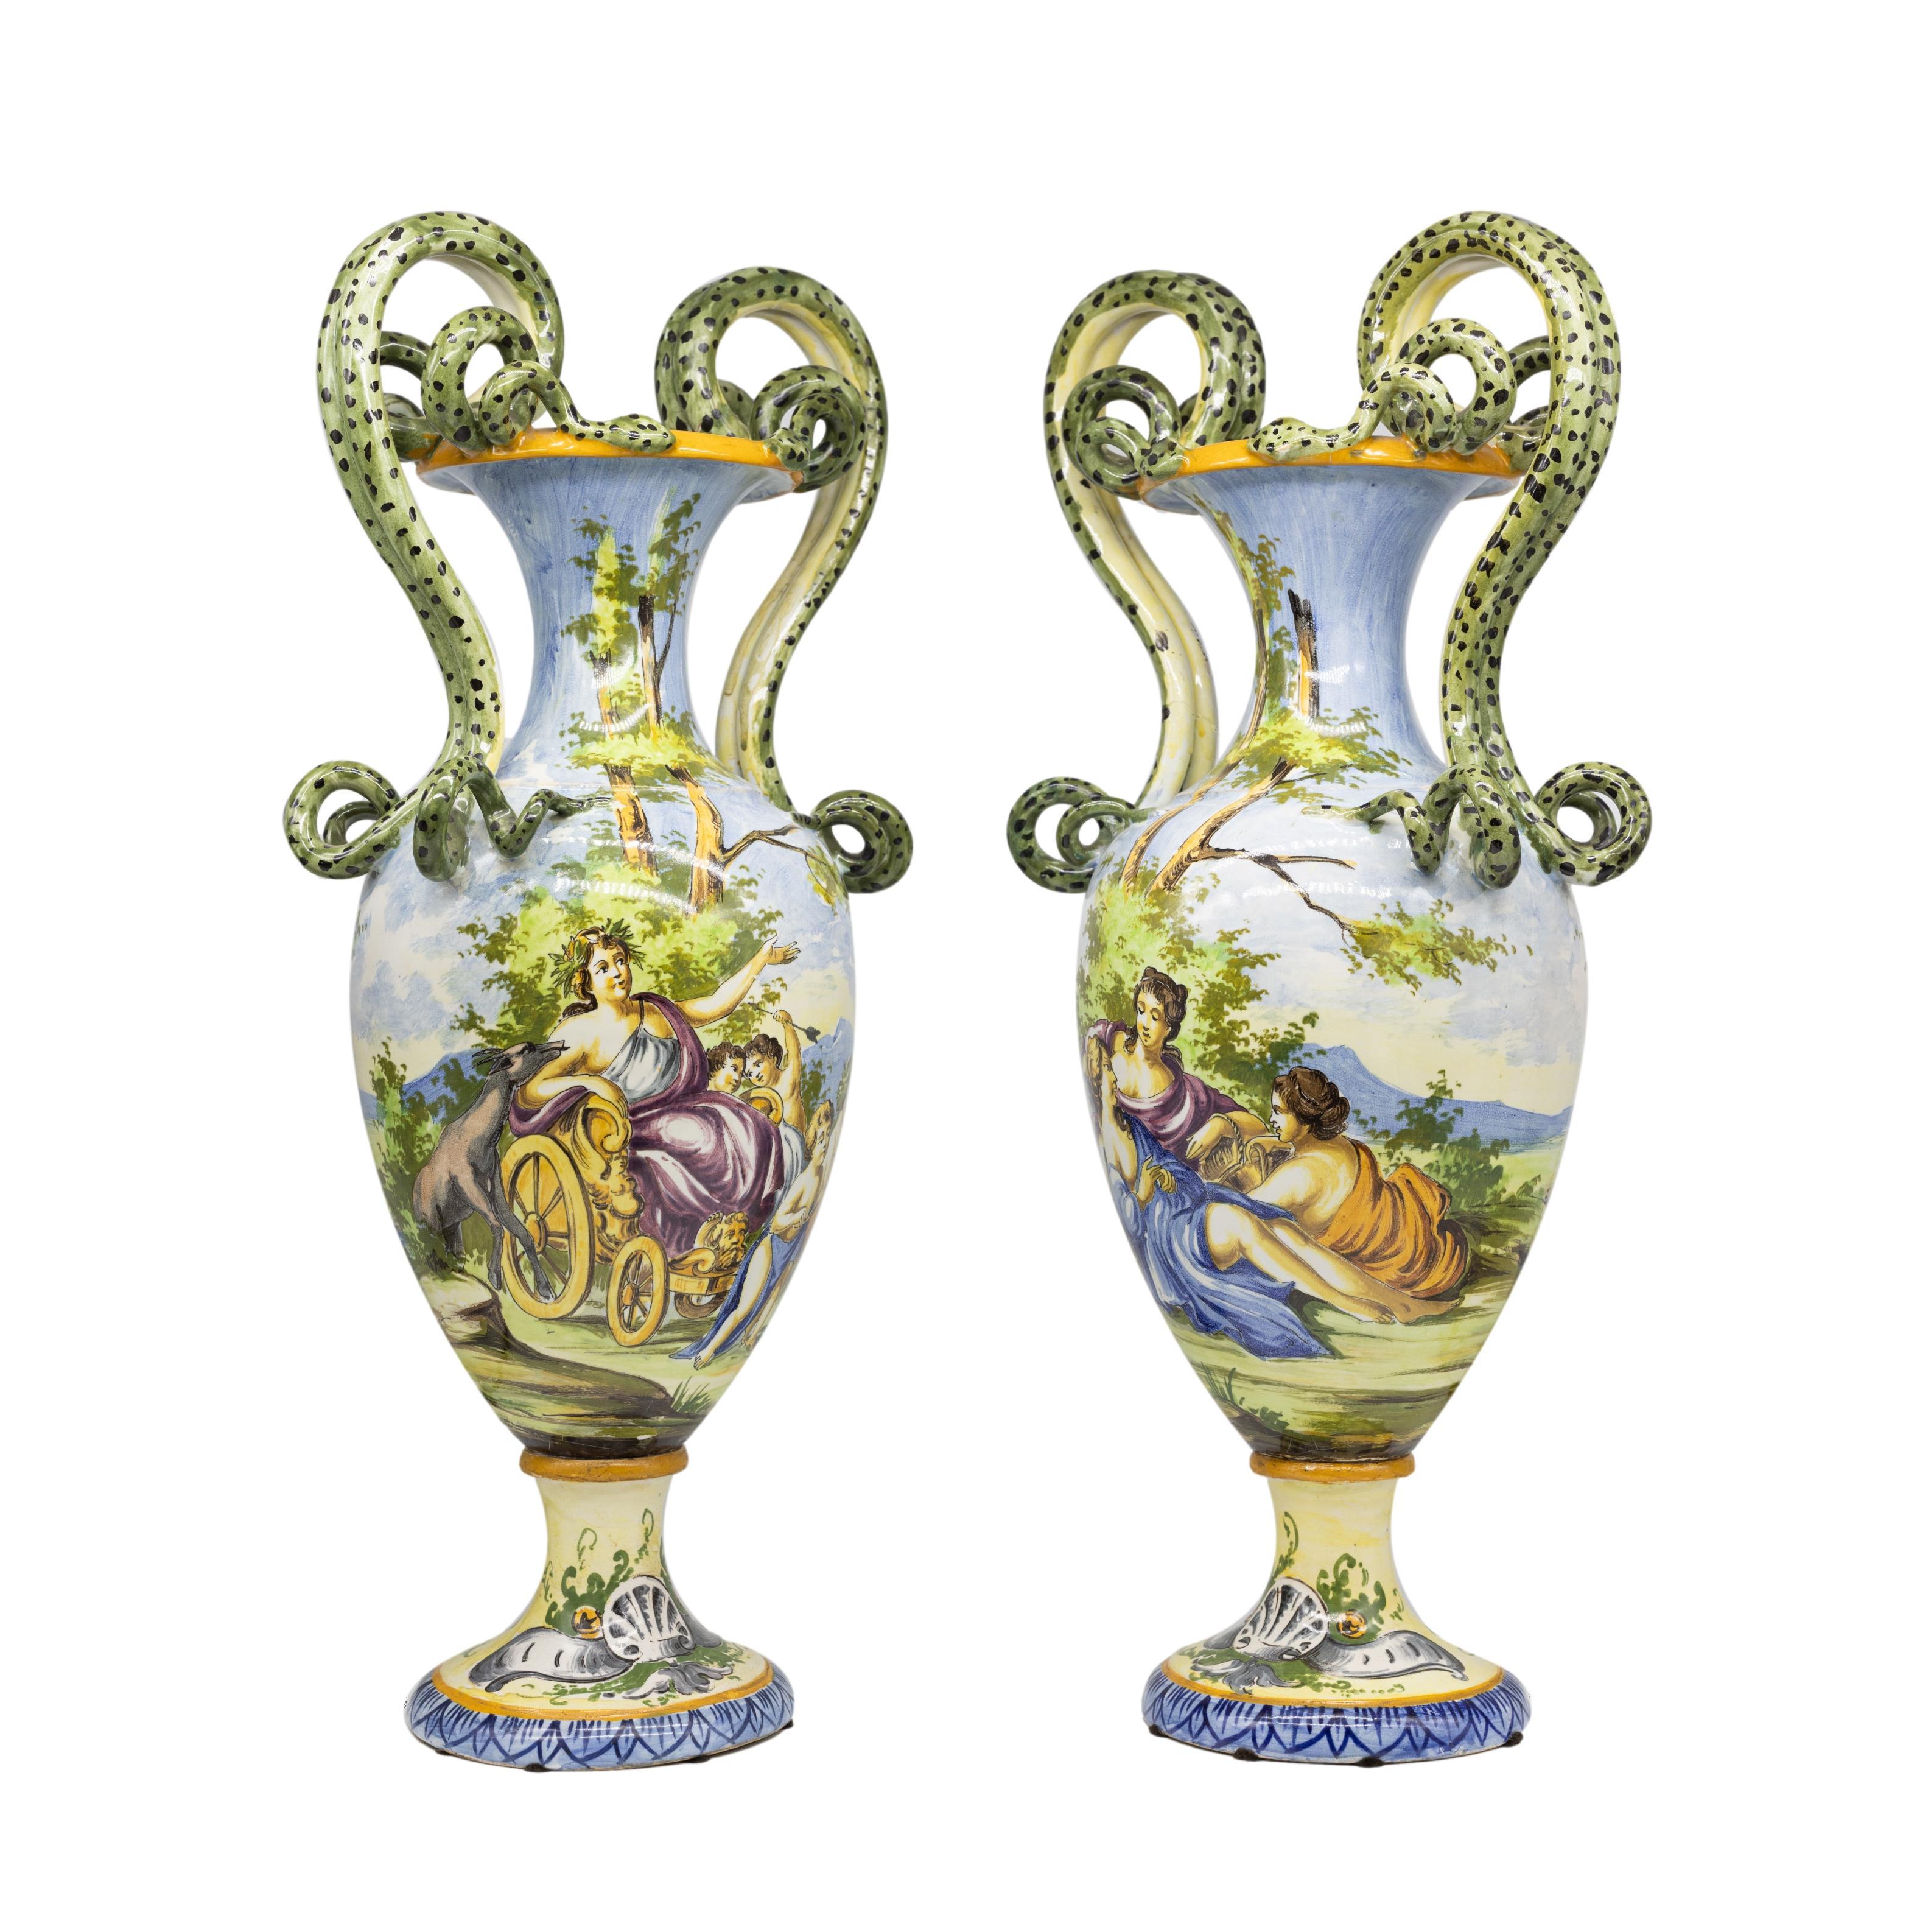 Paire de vases italiens en maïolique, de forme balustre, avec des décors polychromes de style Renassance, sur des bases piédestales, avec de grands serpents moulés et appliqués formant les poignées, le revers avec la marque de Capodimonte pour